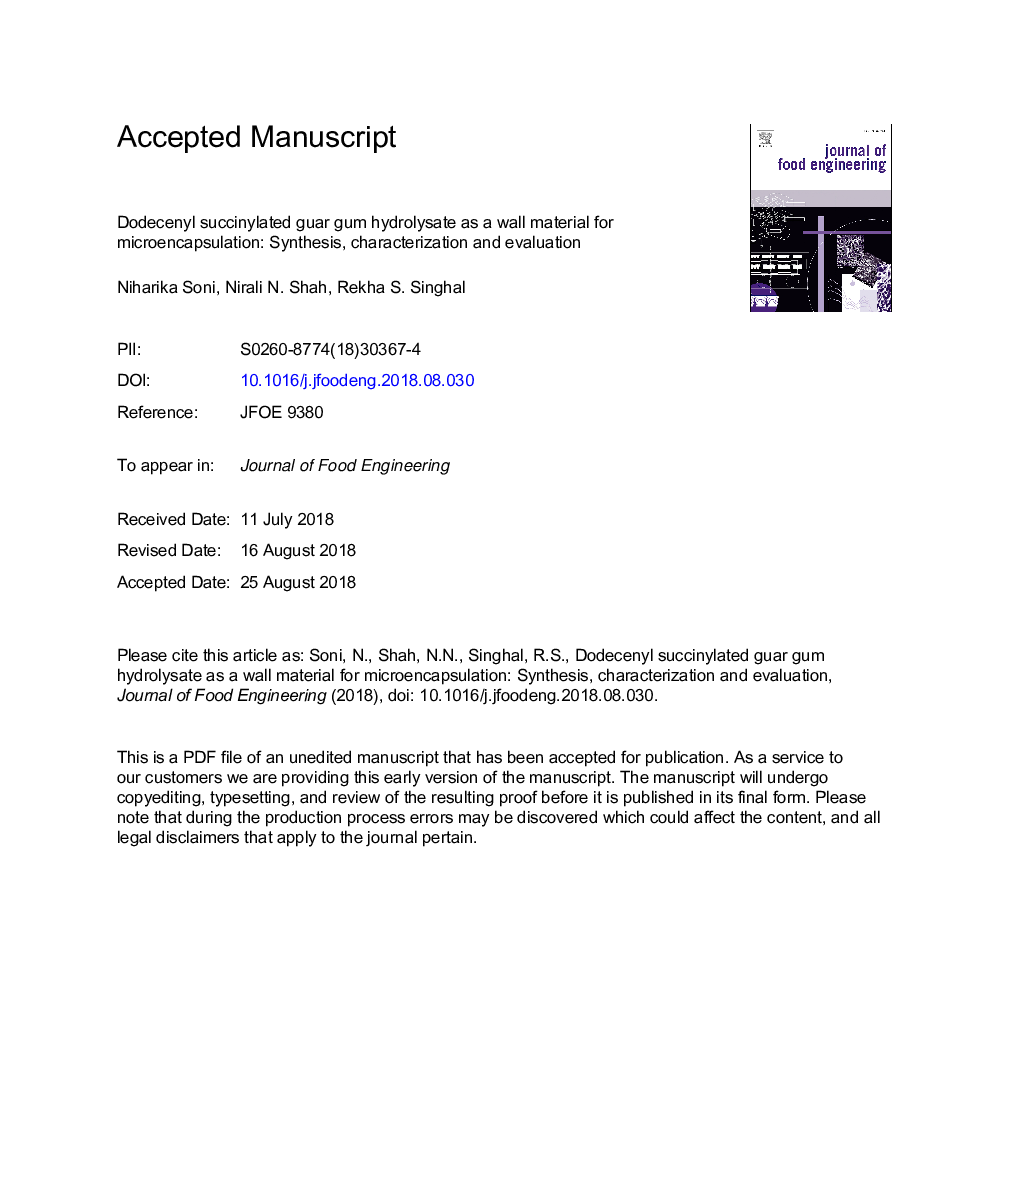 هیدرولیزر آدامس آدنویل سوکینیل شده گارا به عنوان یک ماده دیوار برای میکروکپسوله سازی: سنتز، مشخص کردن و ارزیابی